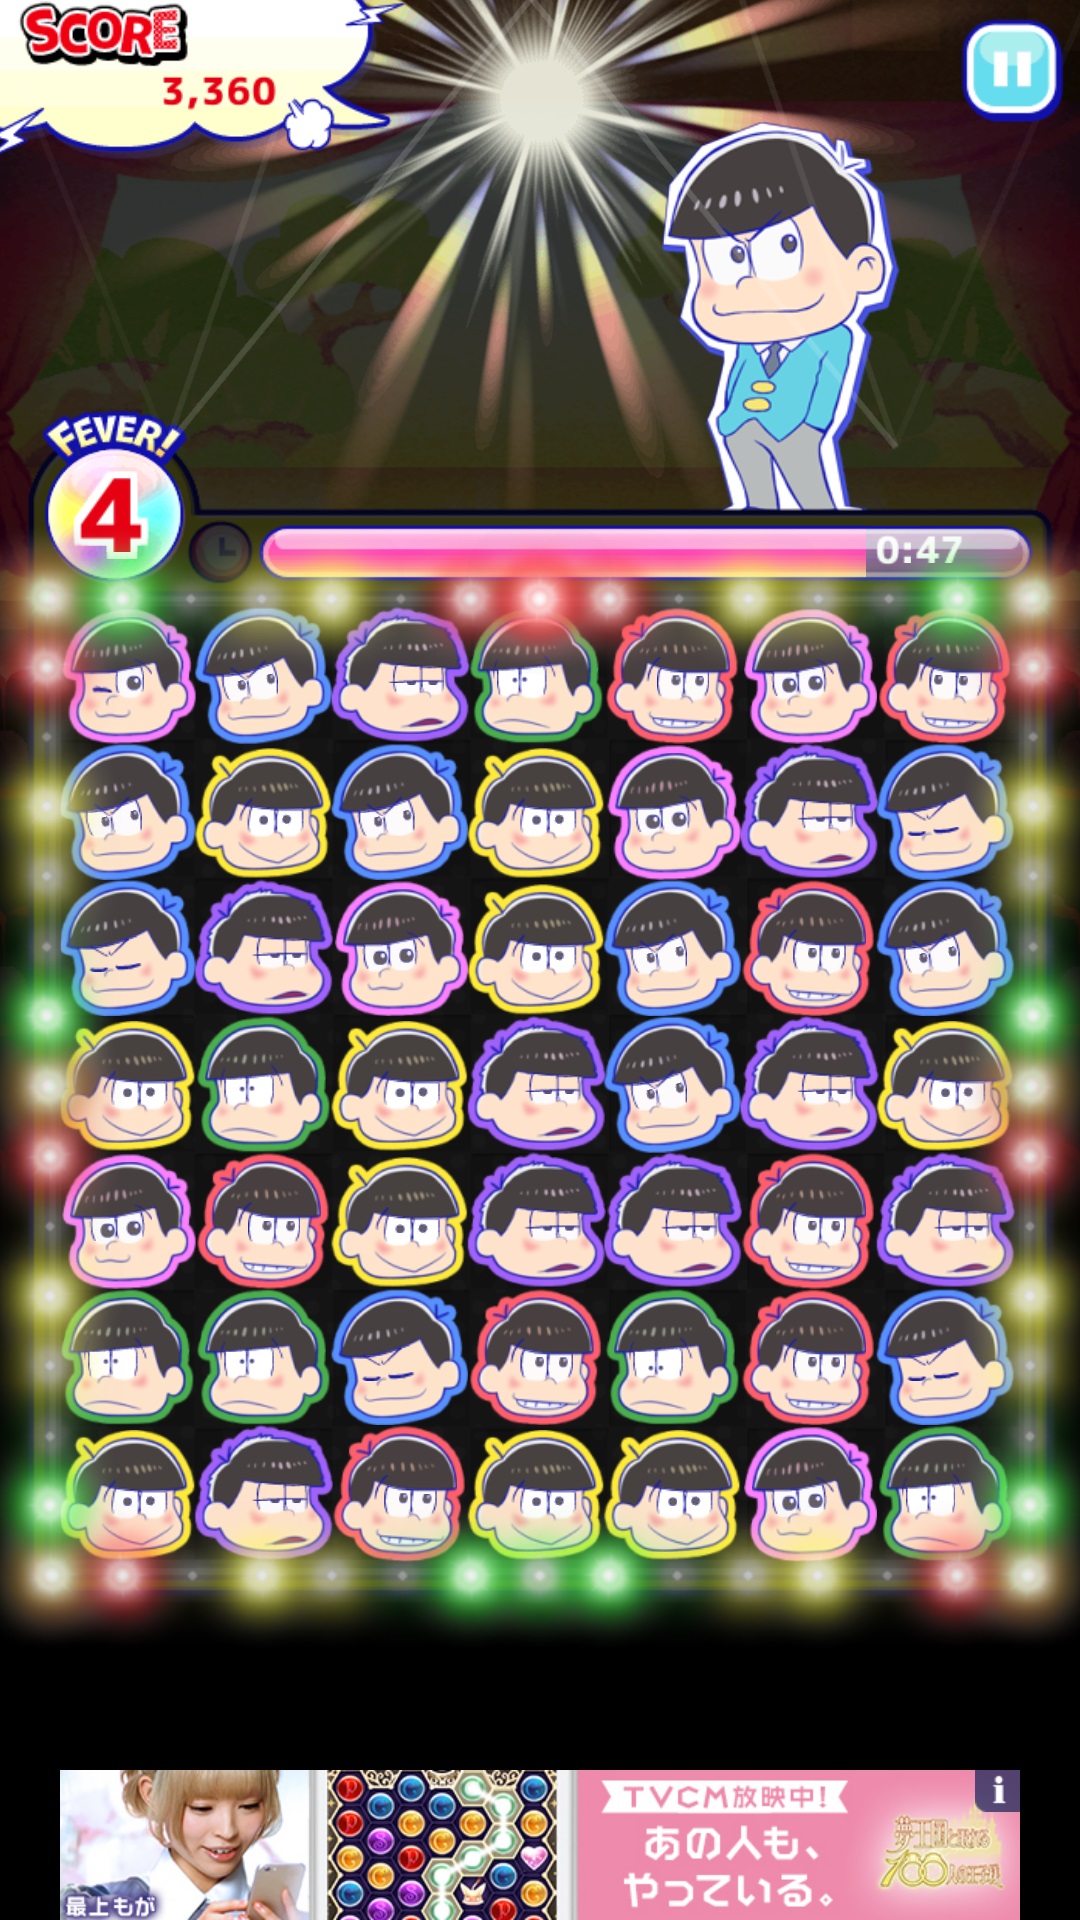 パズ松さん あの6つ子たちと毎日会える 遊べる アニメ おそ松さん のキャラクターが活躍するパズルゲーム Boom App Games